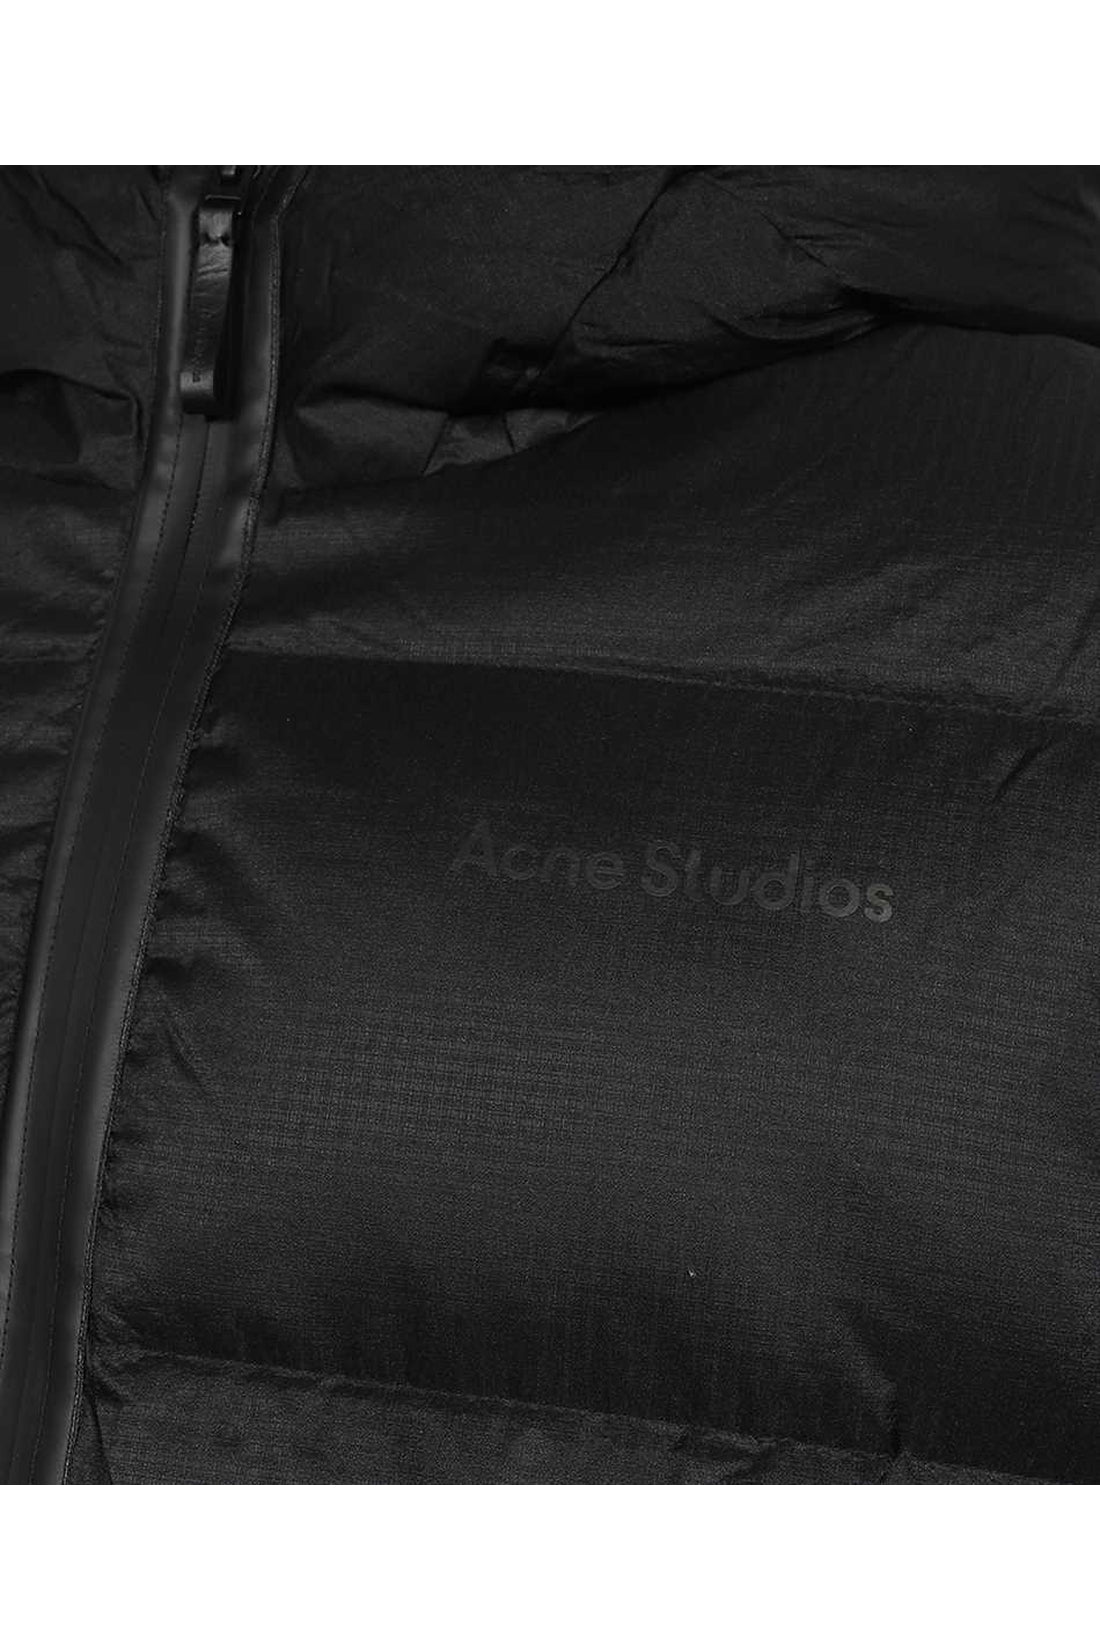 Acne Studios-OUTLET-SALE-Techno-nylon down jacket-ARCHIVIST